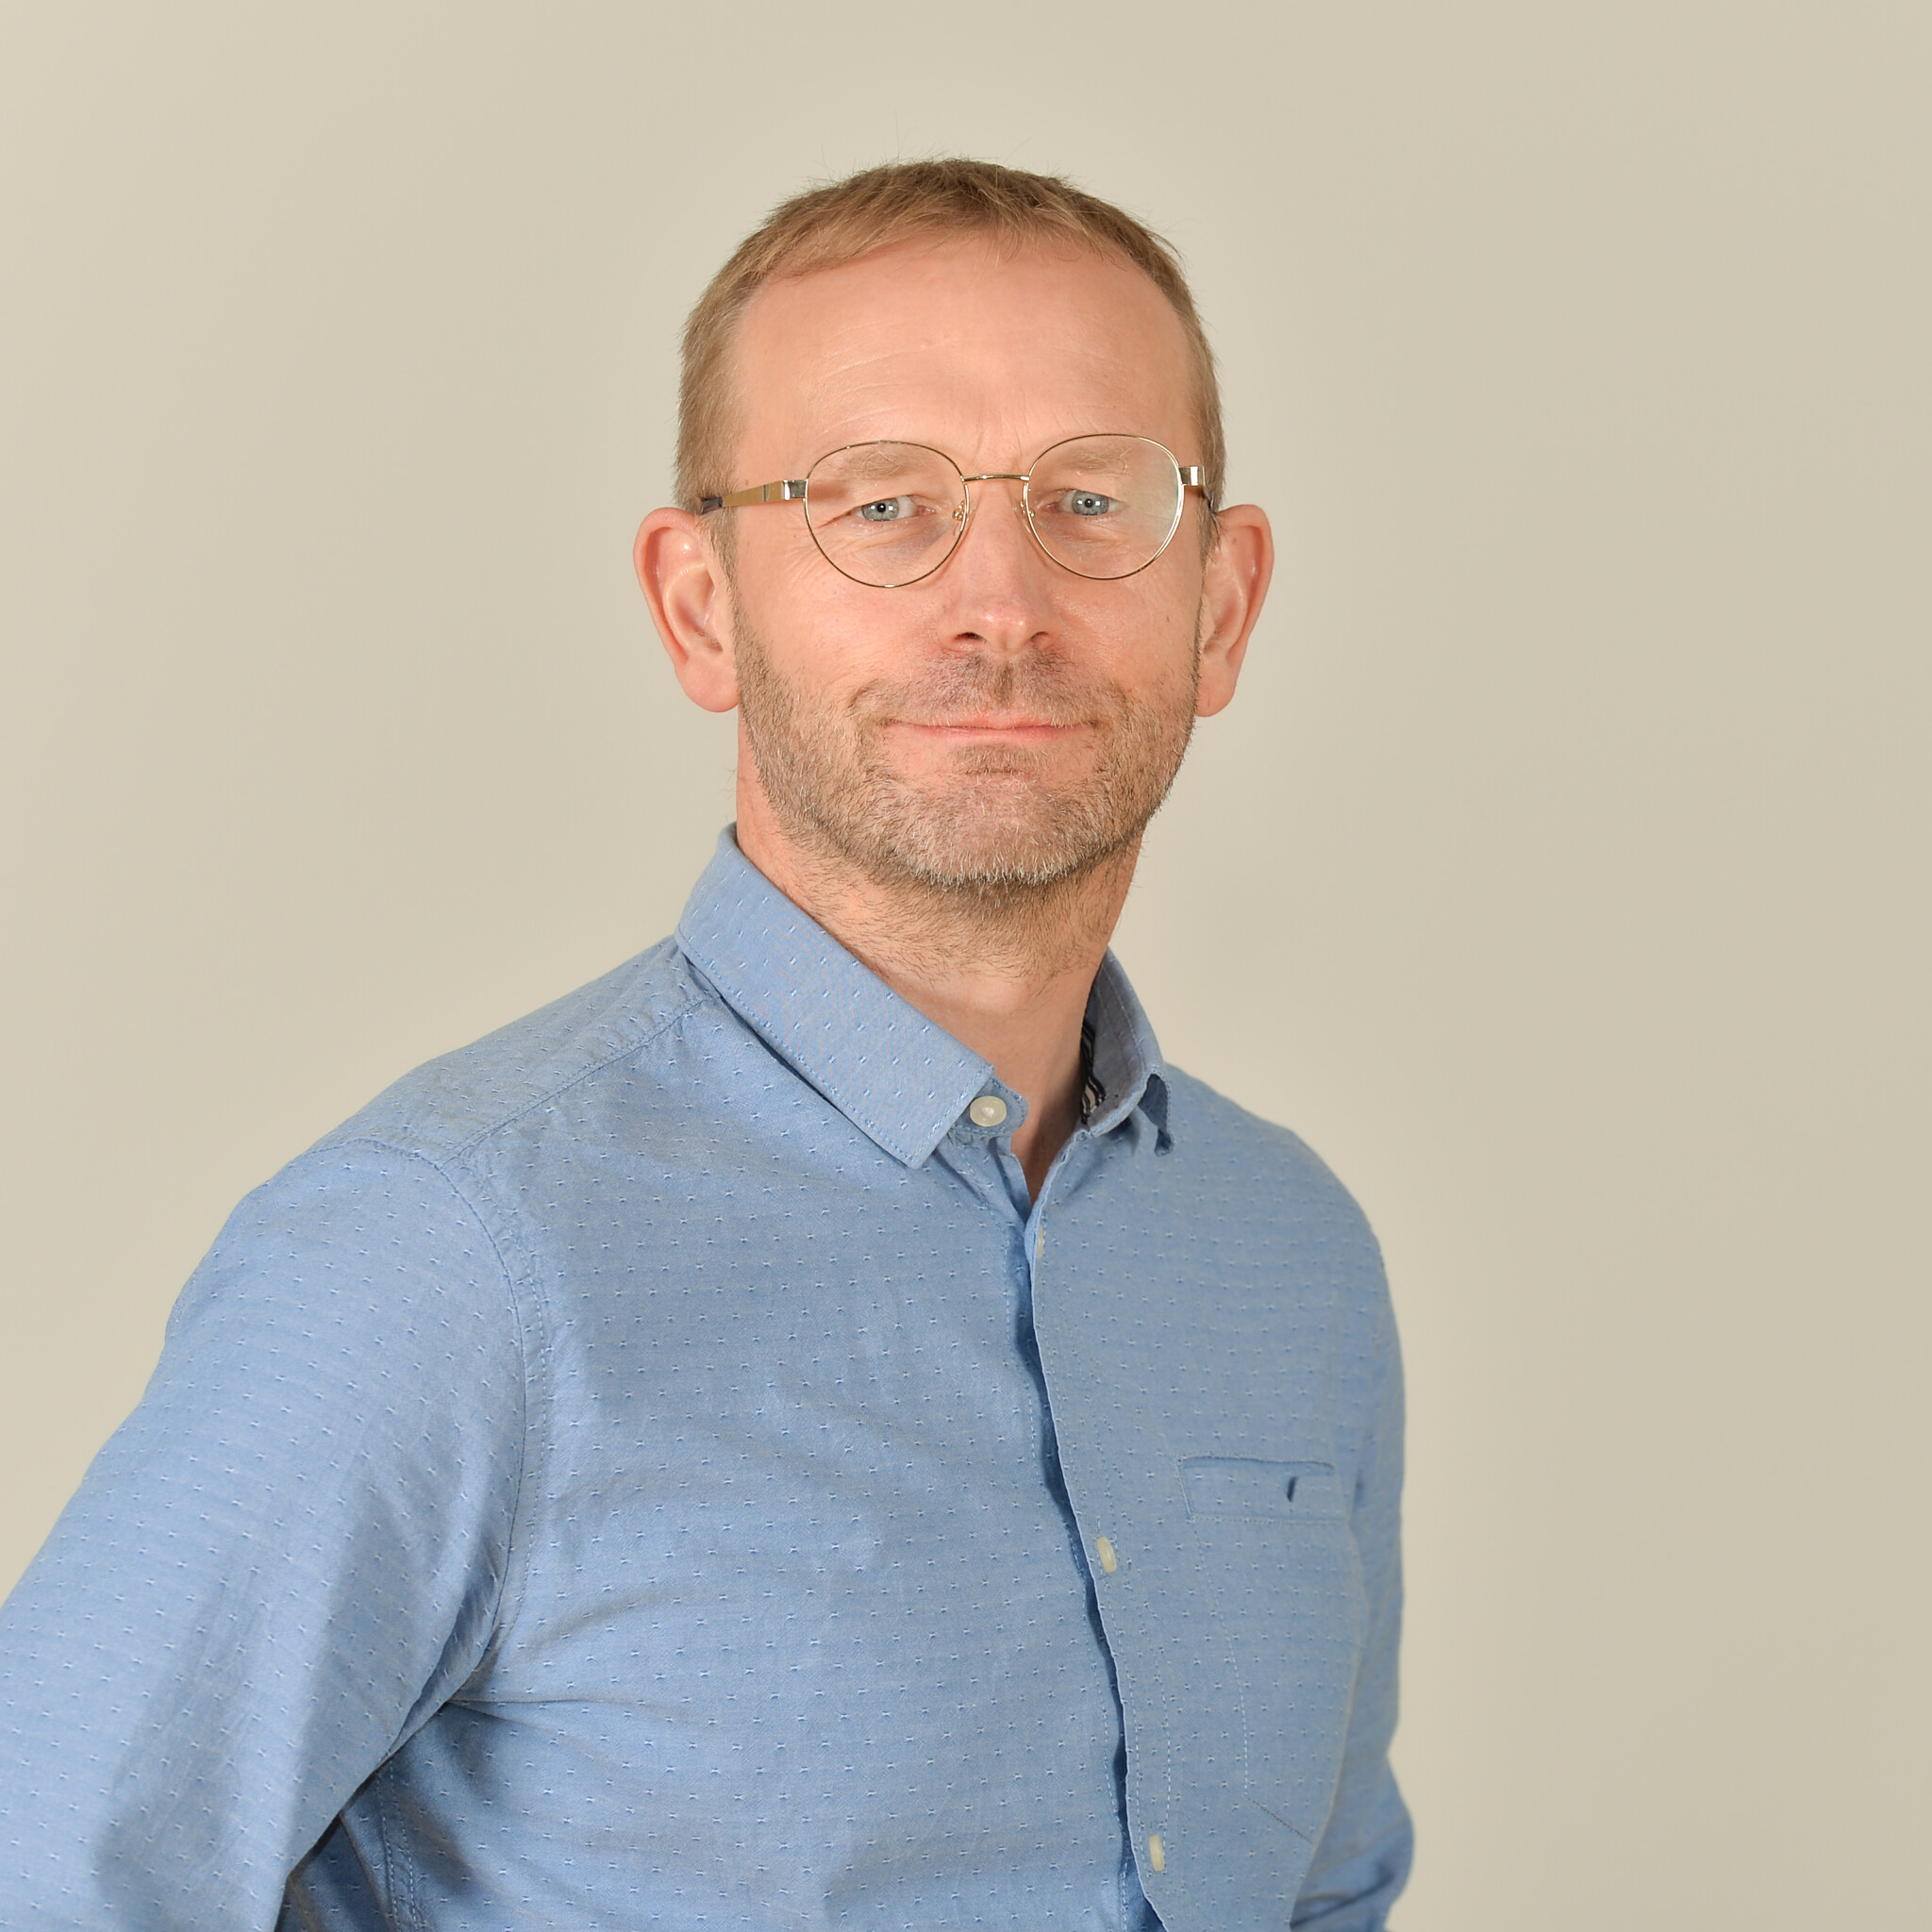 Profilbild von Dr. Markus Lücken im blauen Hemd.